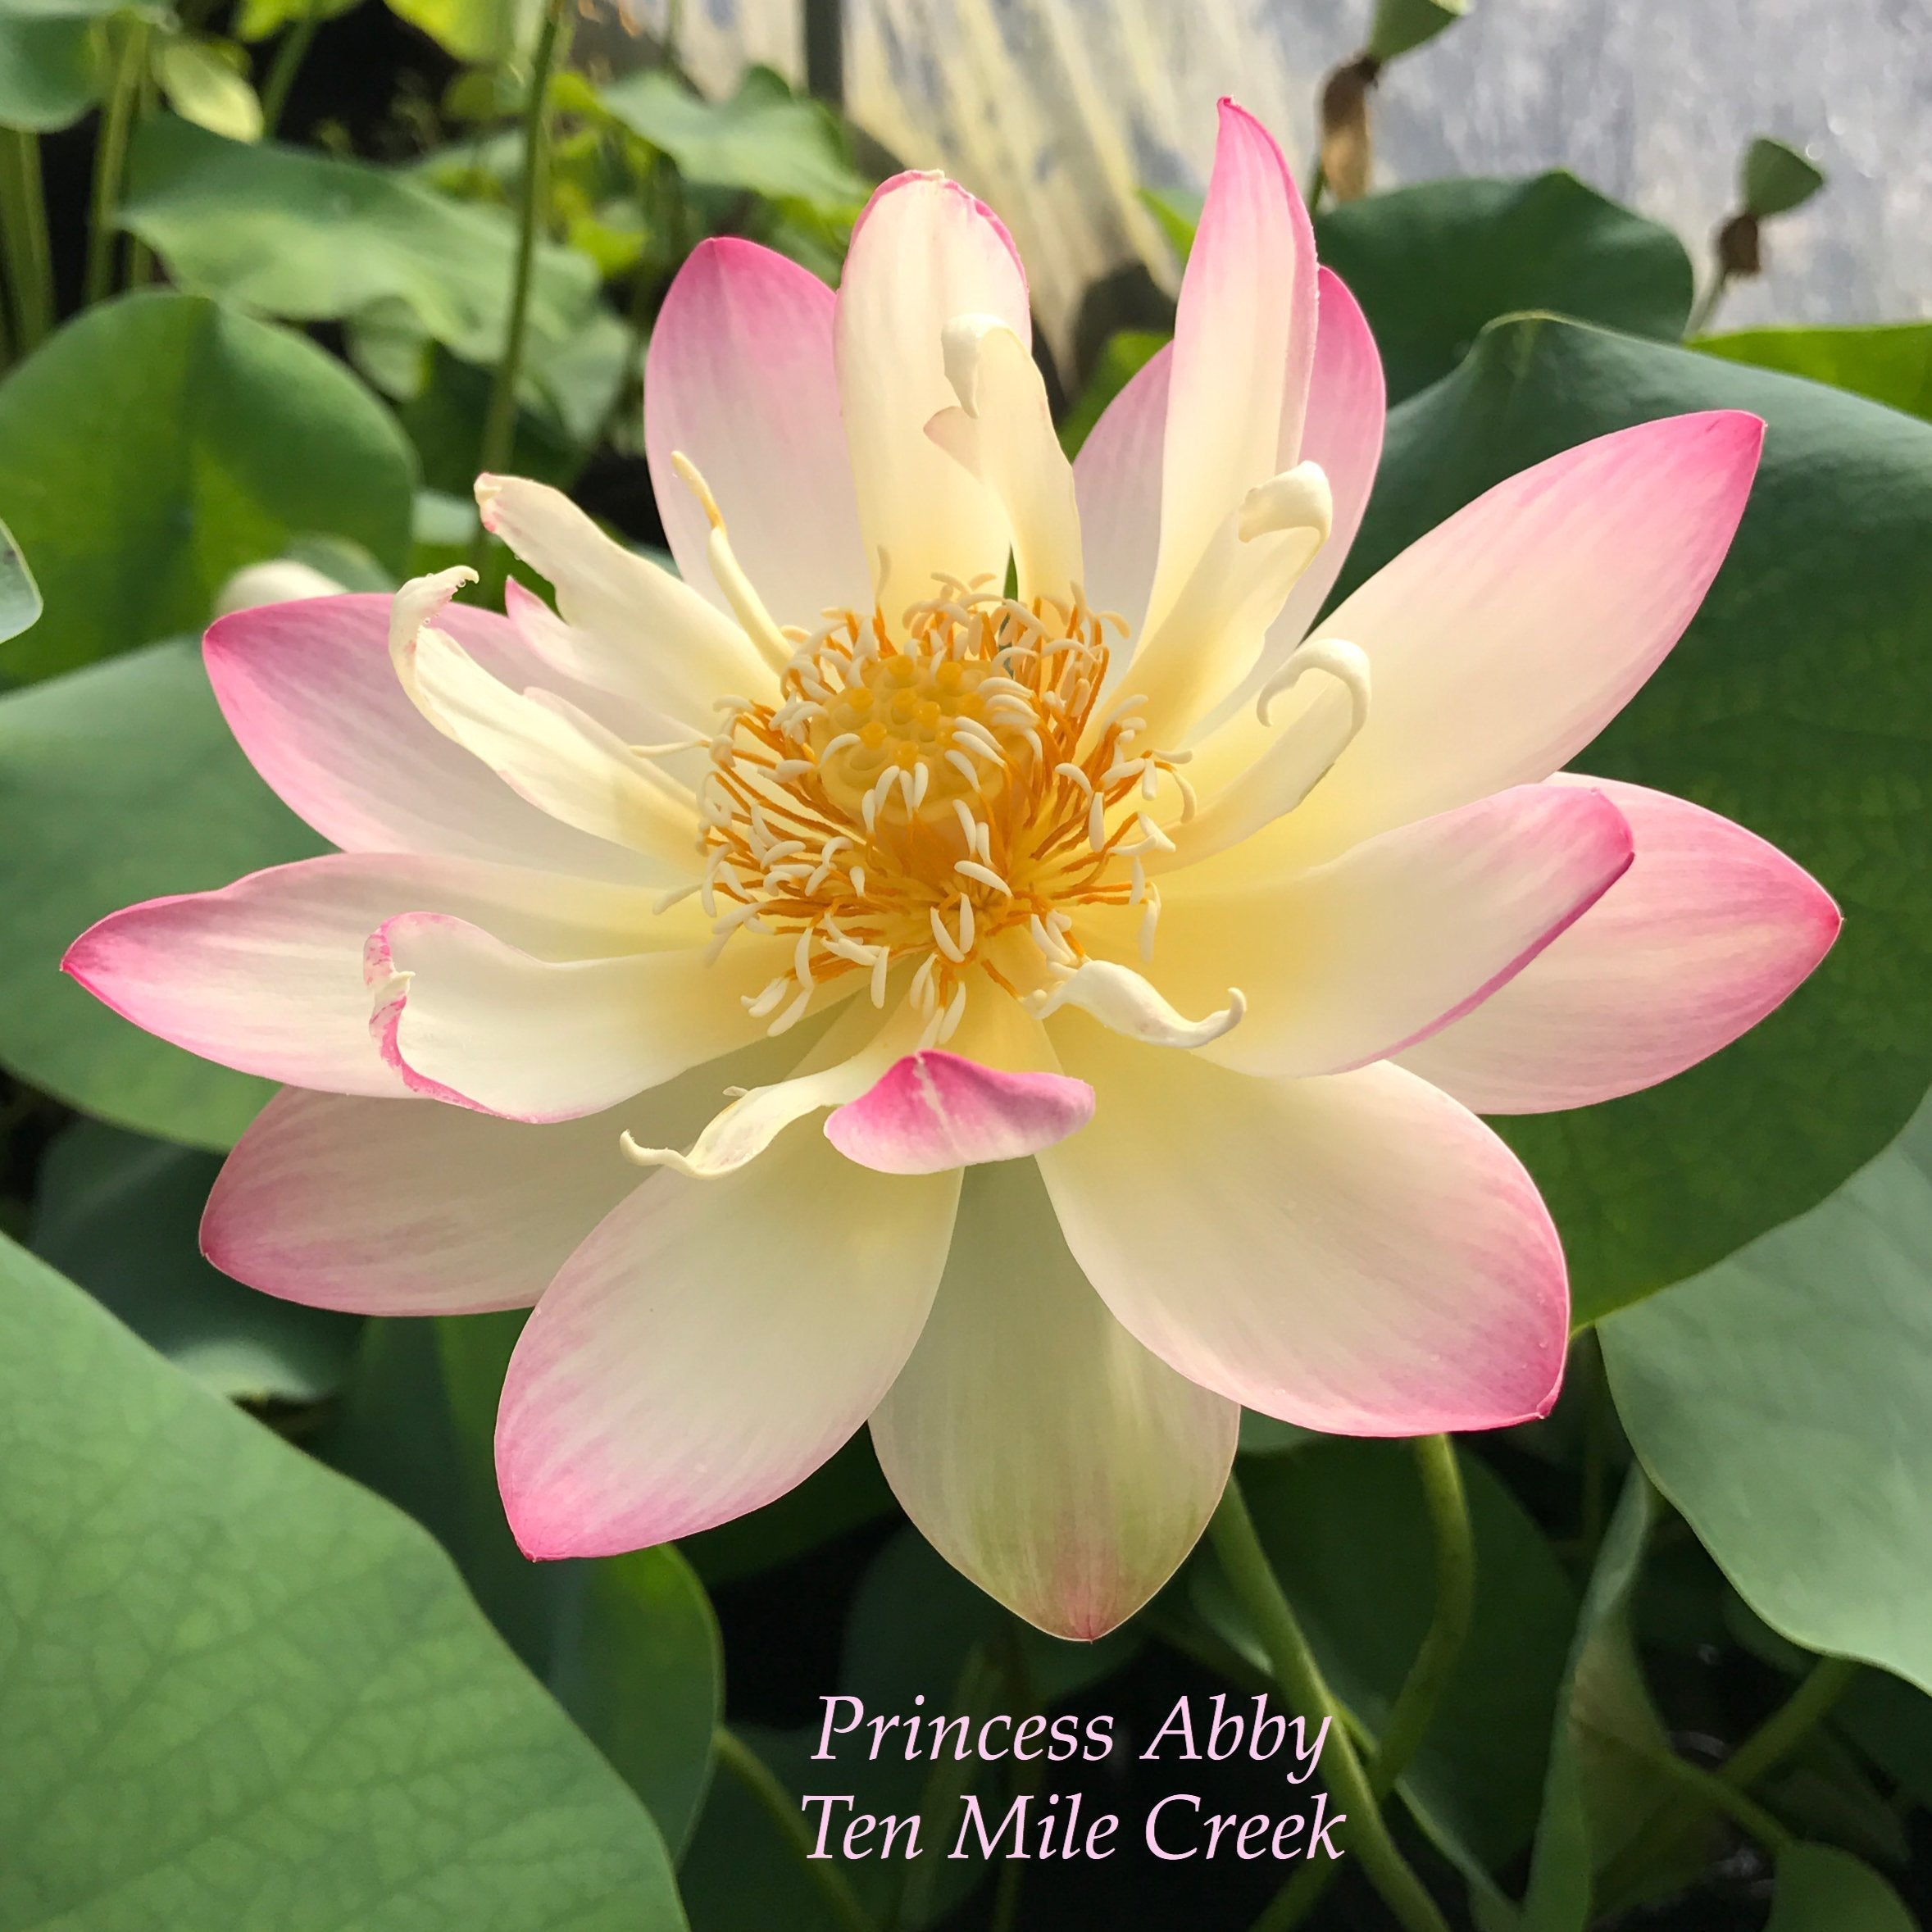 Princess Abby of Ten Mile Creek - #1 Selling Bowl Lotus (Bare Root)